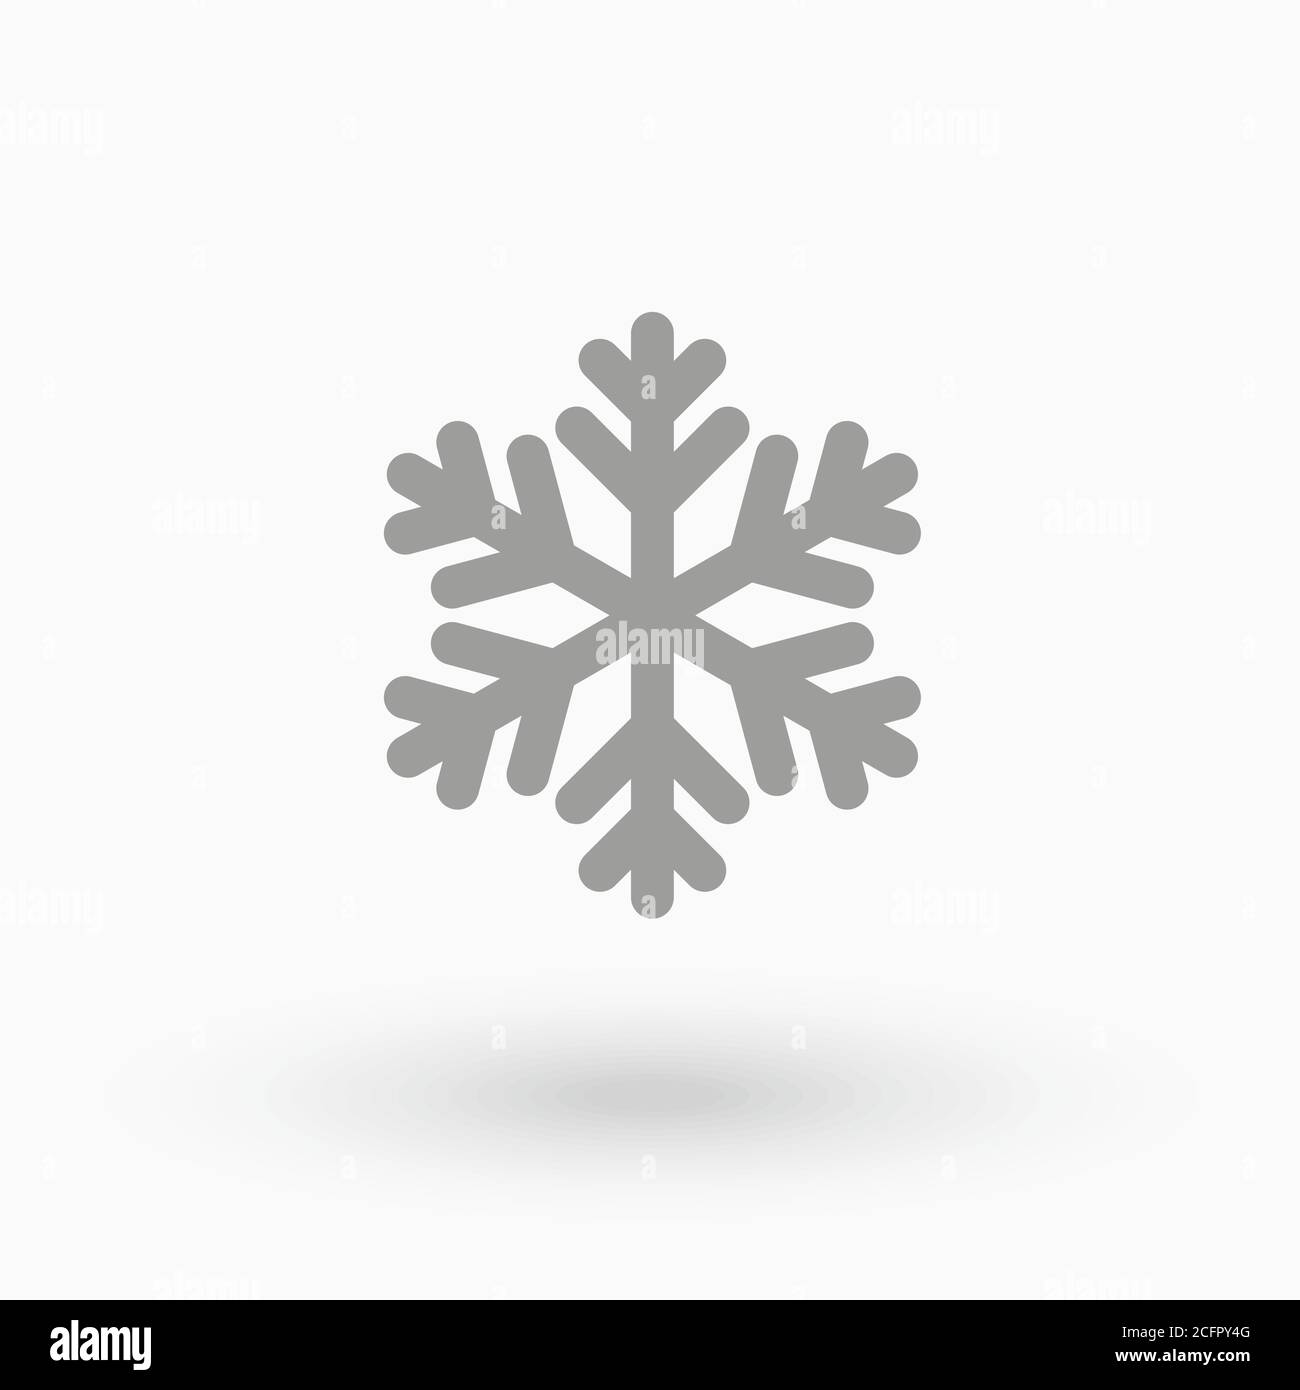 Semplice icona di fiocco di neve in stile linea su sfondo bianco. Per decorazioni e ornamenti natalizi. Illustrazione Vettoriale